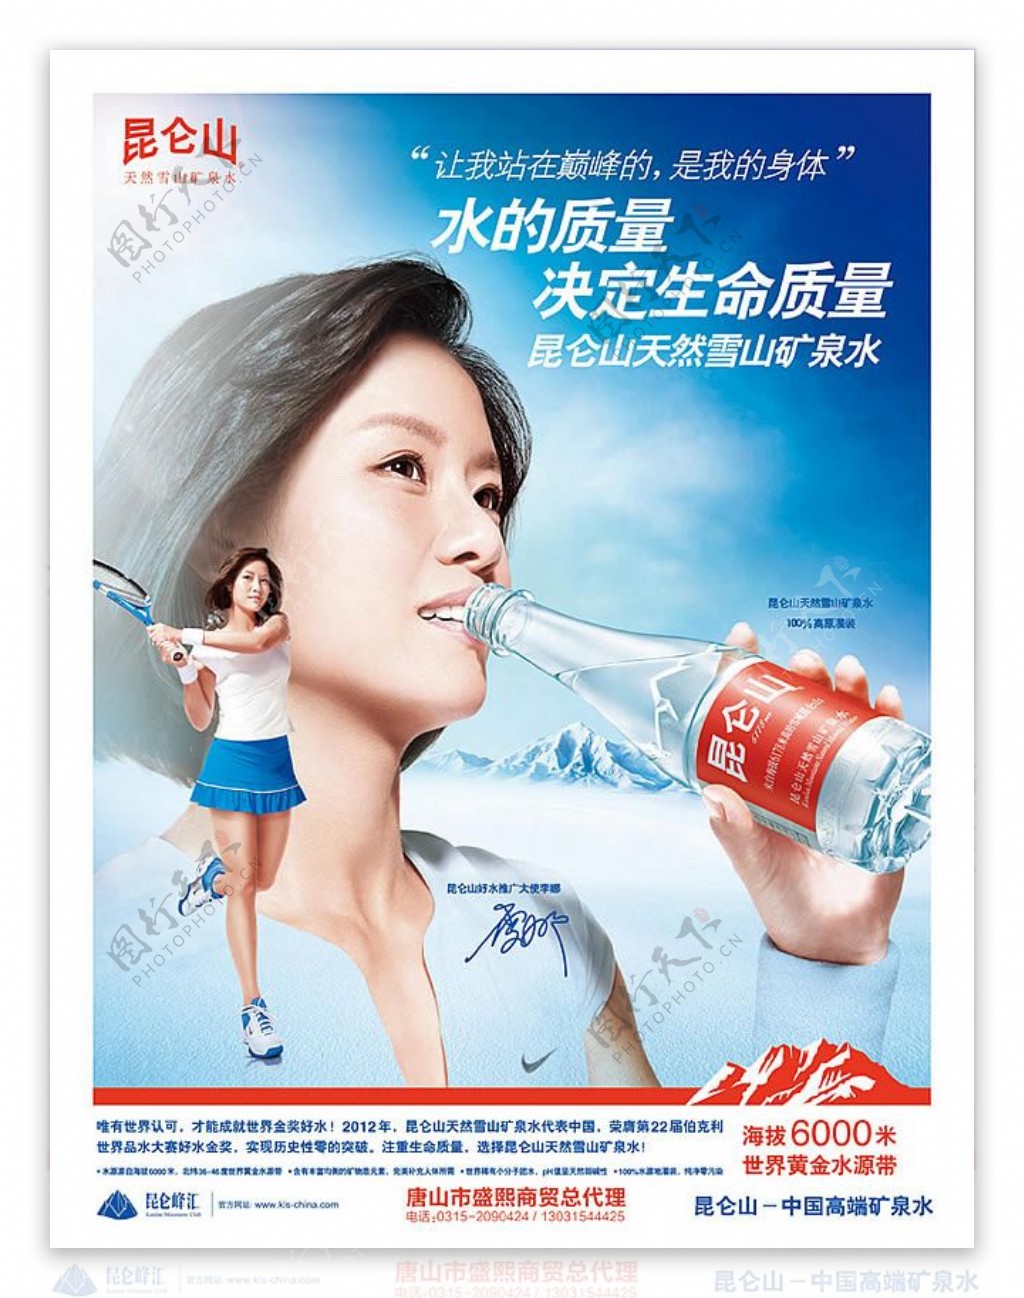 李娜代言昆仑山矿泉水宣传广告设计